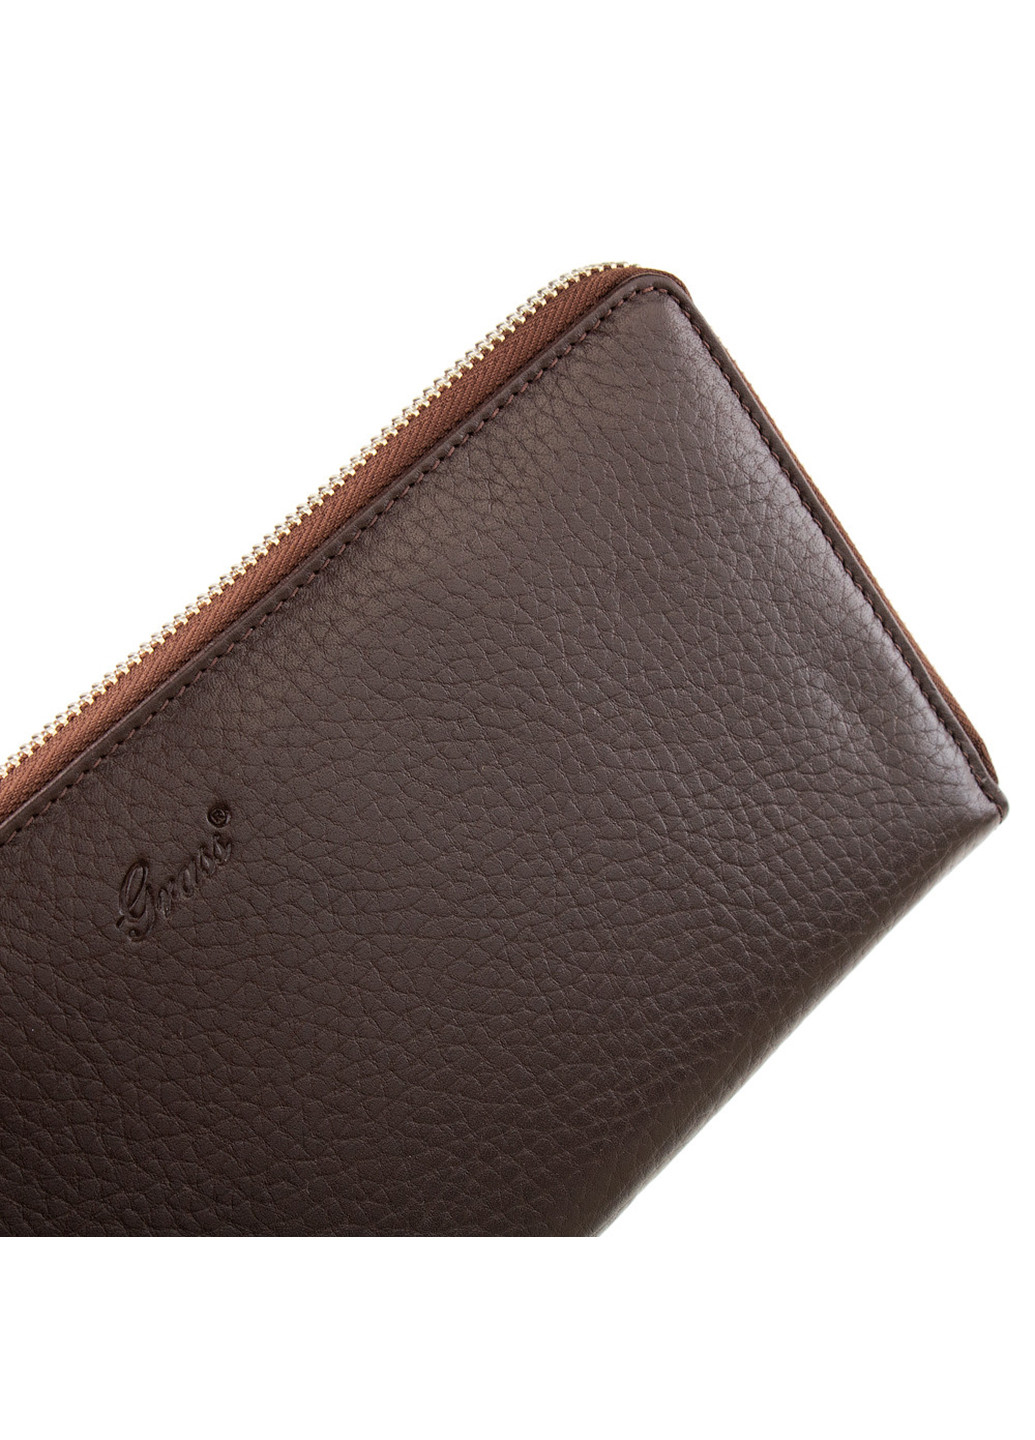 Жіночий шкіряний гаманець 24х12х2 см Grass (252129087)